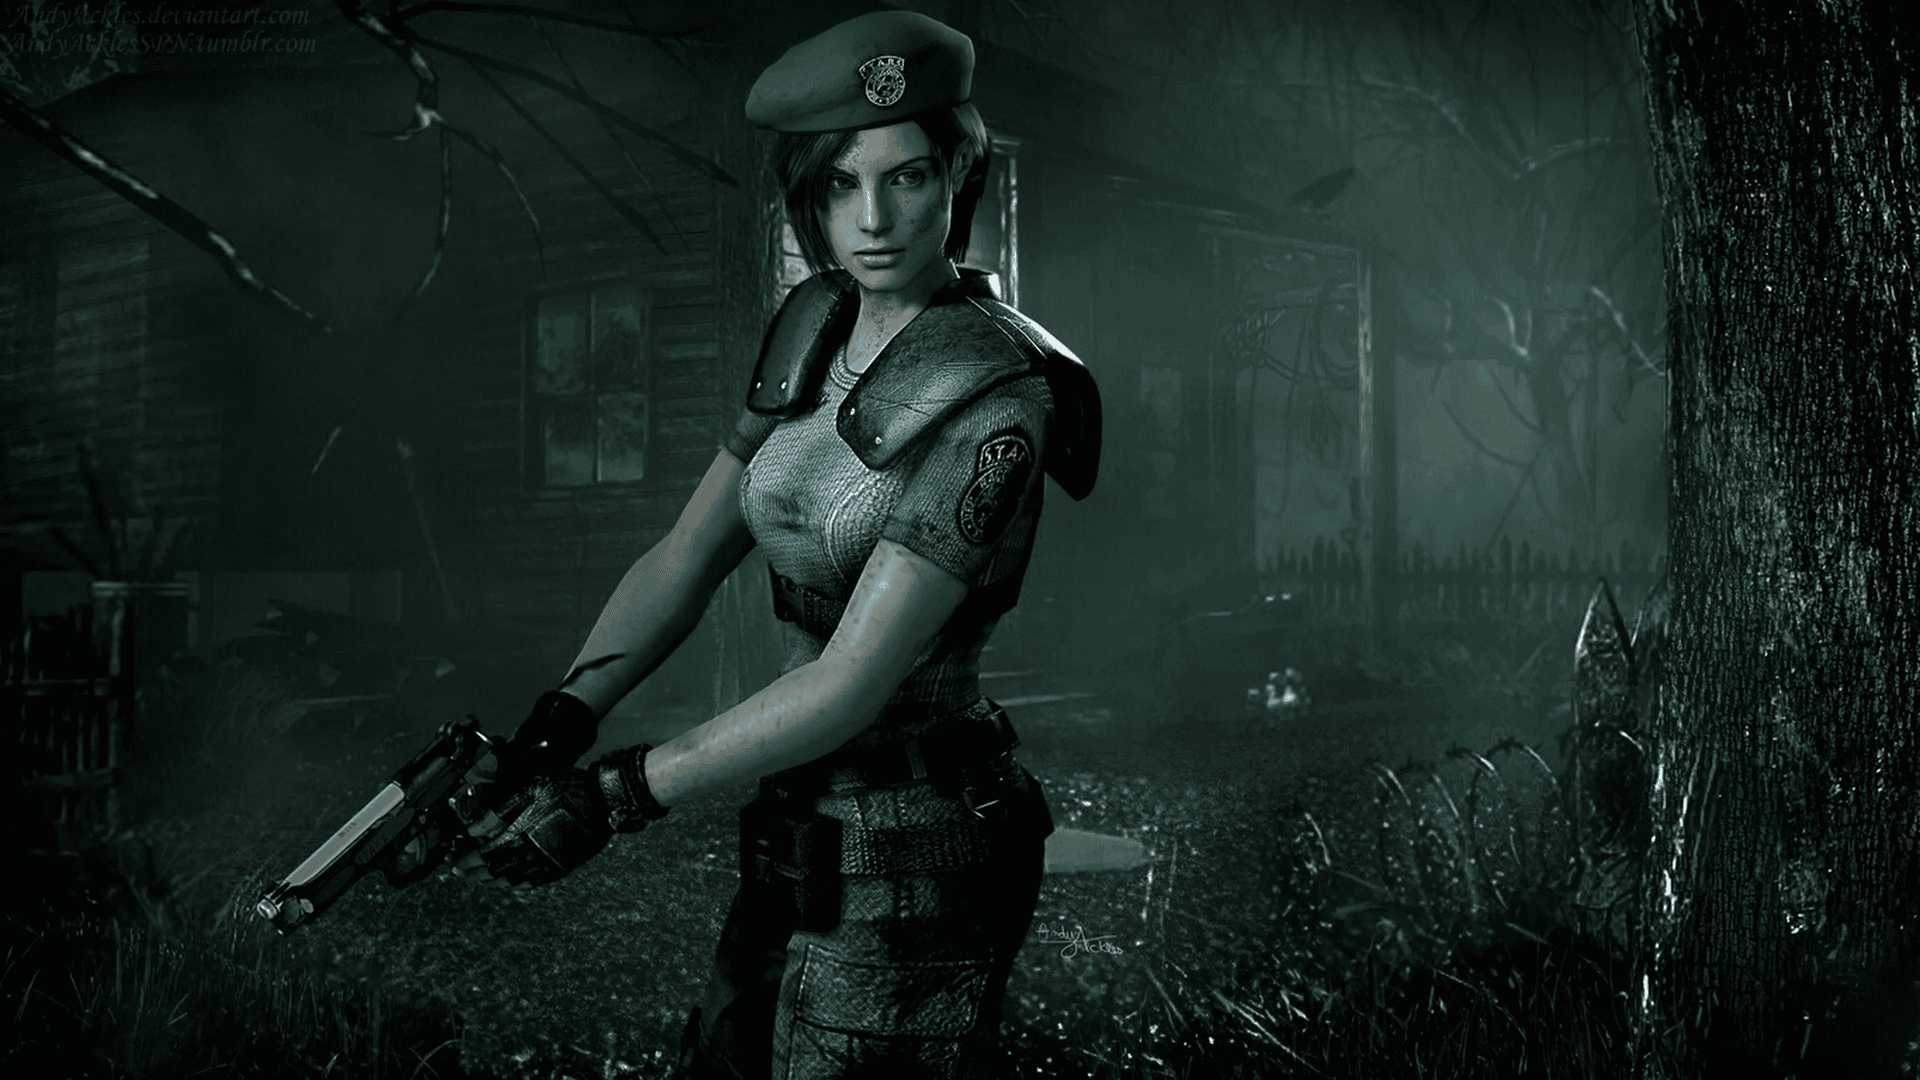 O Resident Evil 4 Remake Chegou! Qual Hardware roda ele